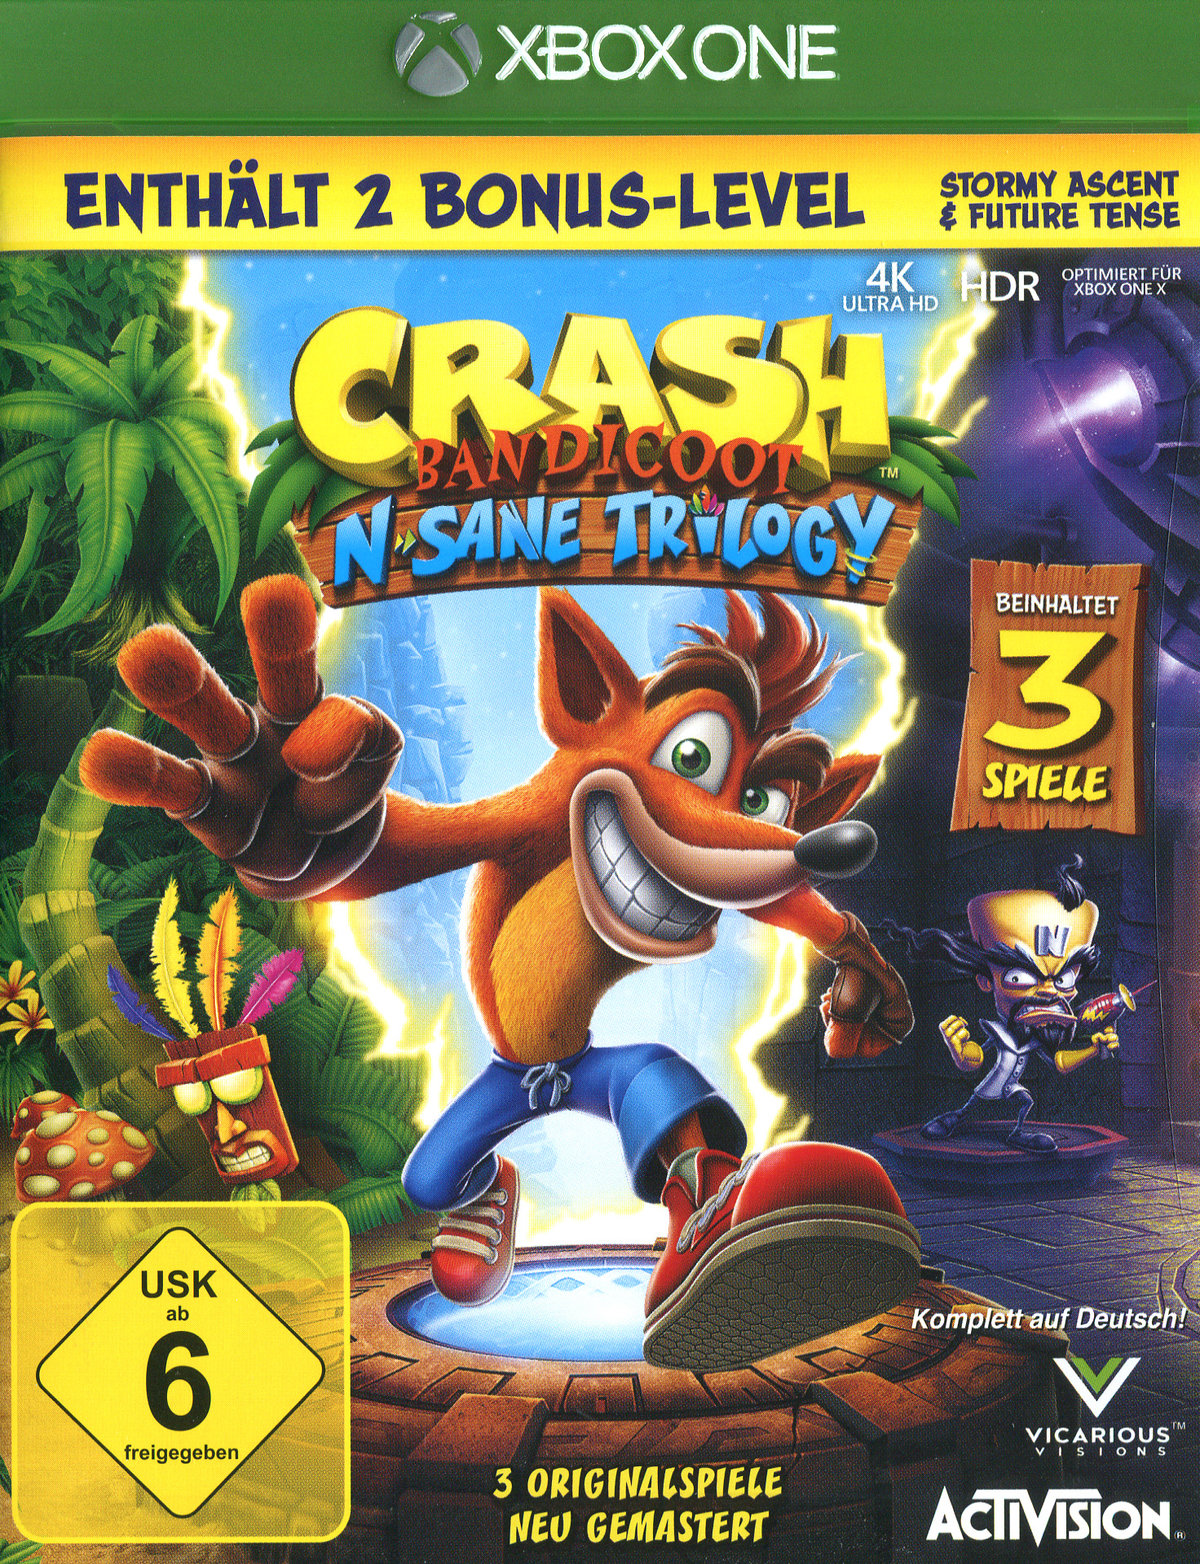 Crash Bandicoot N.Sane Trilogy Xbox One von Activ. Blizzard